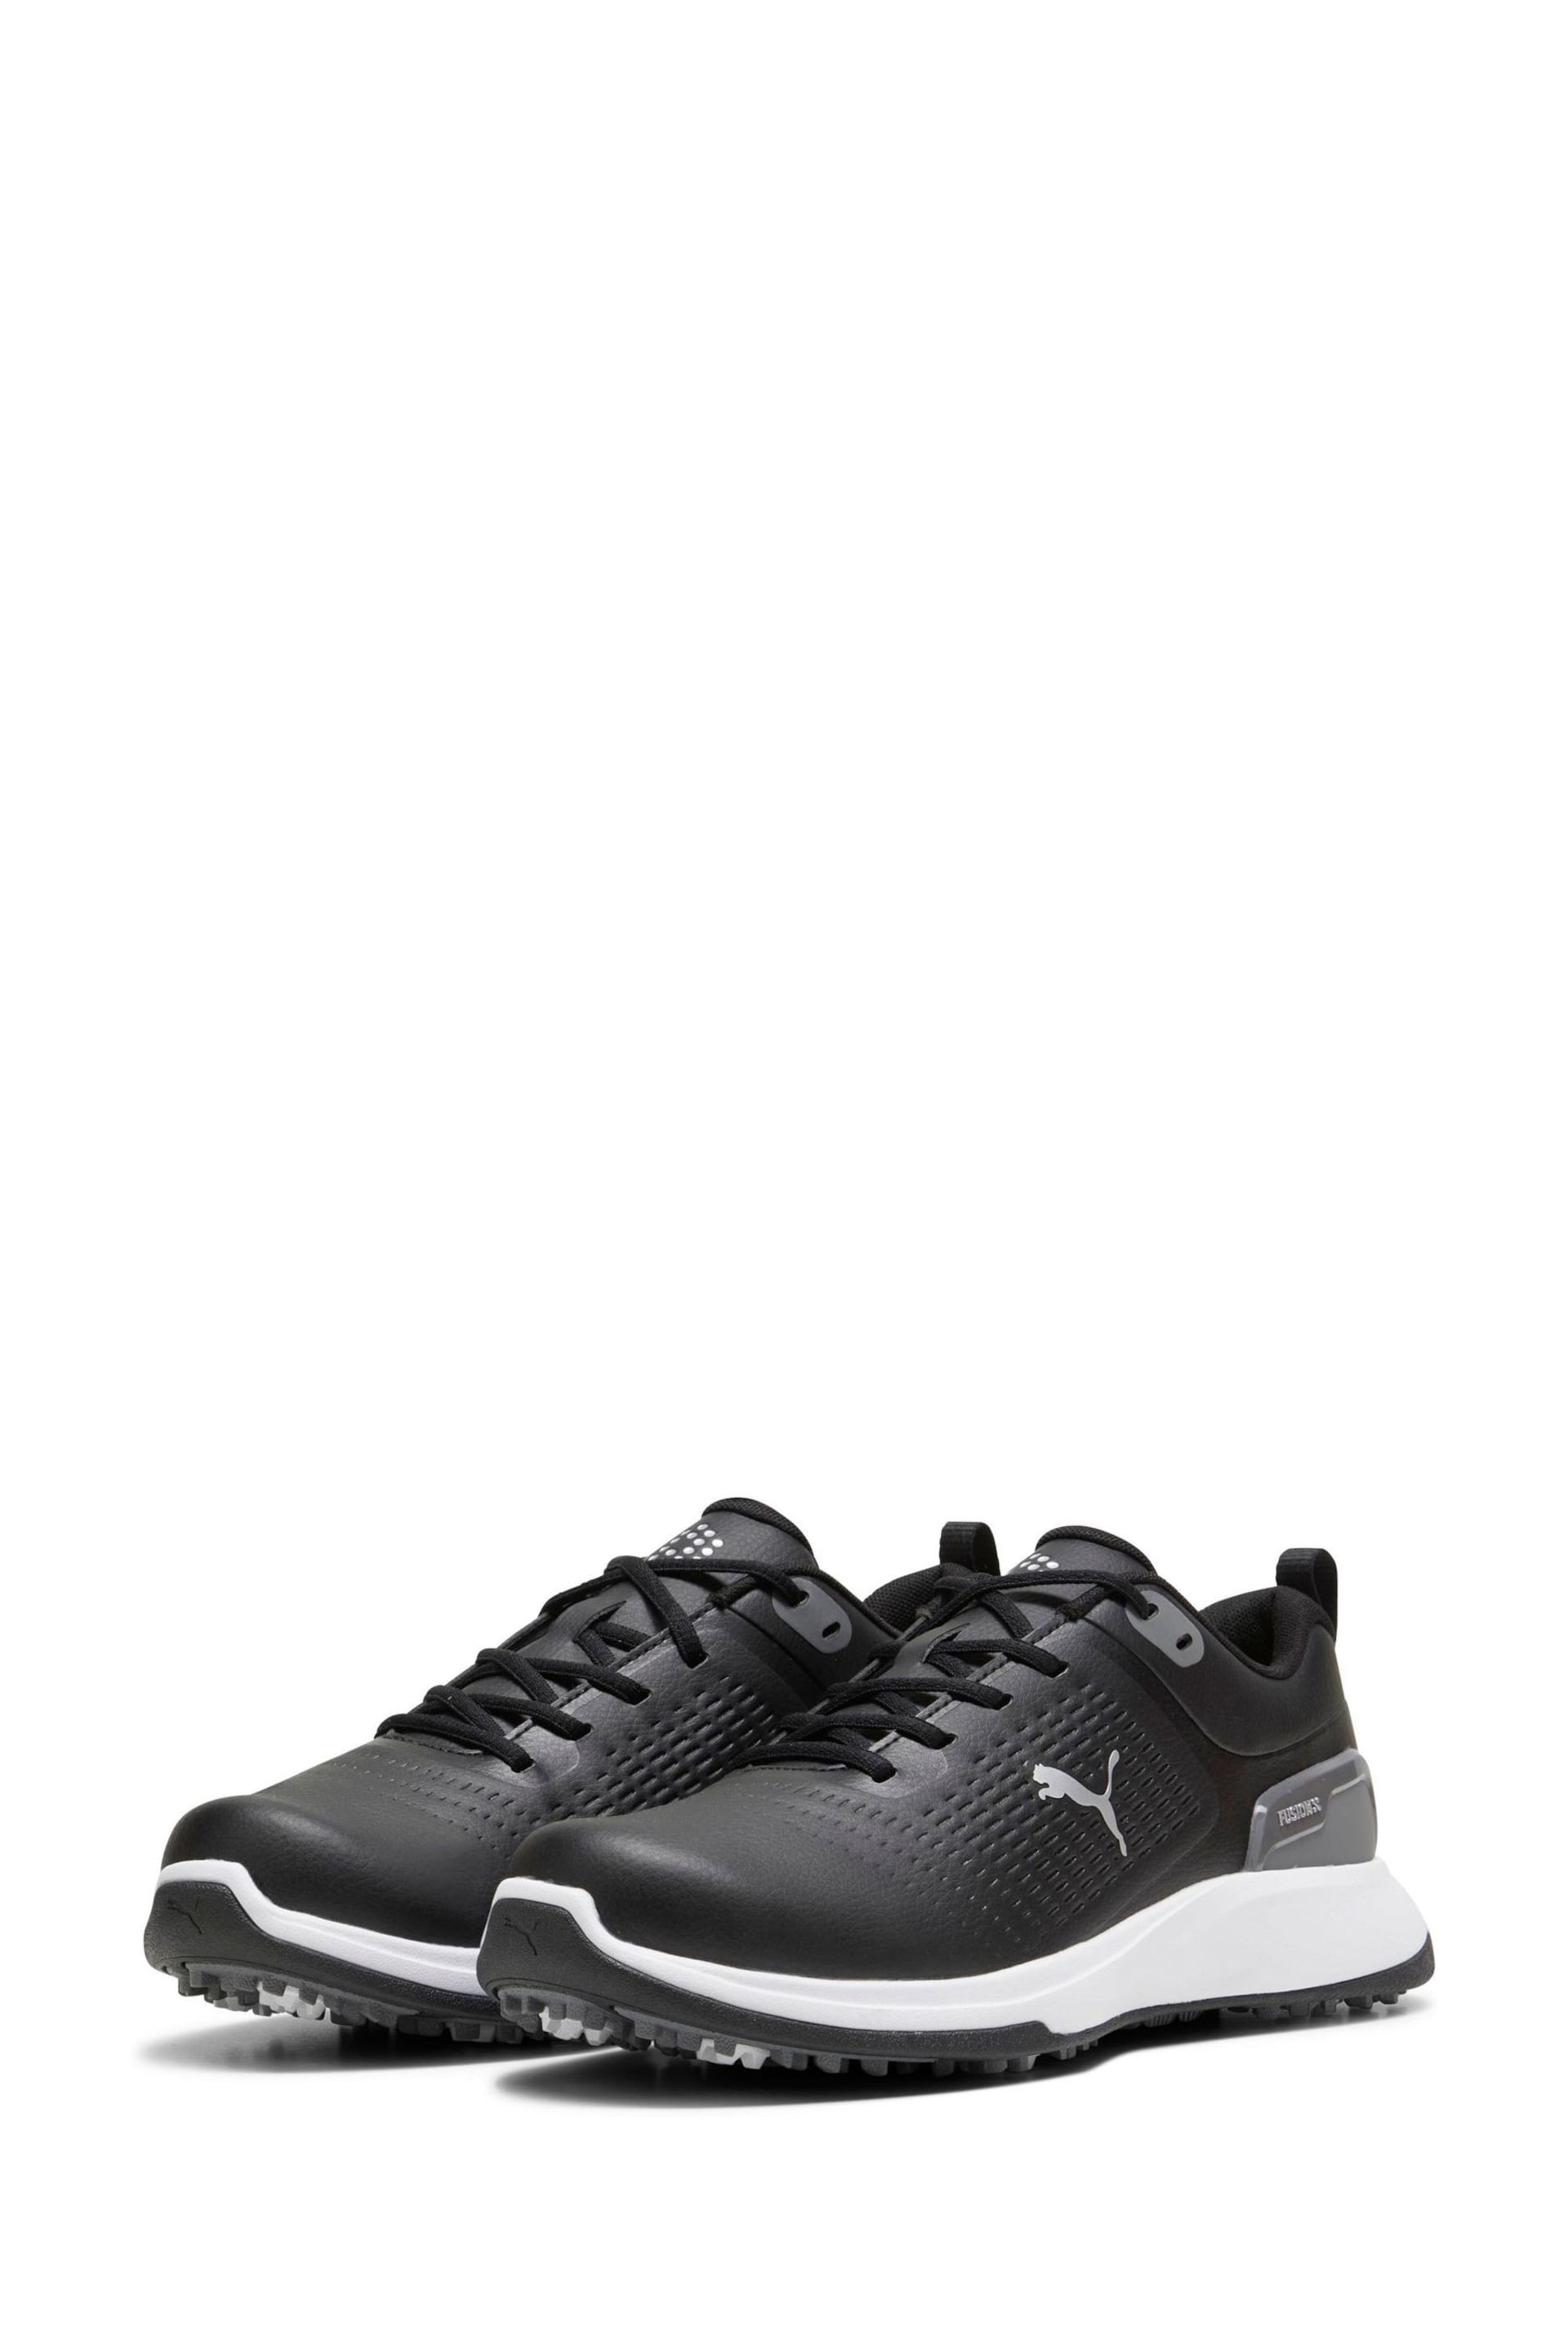 Puma Black Mens Grip Fusion Flex Golf Shoes - Image 3 of 6